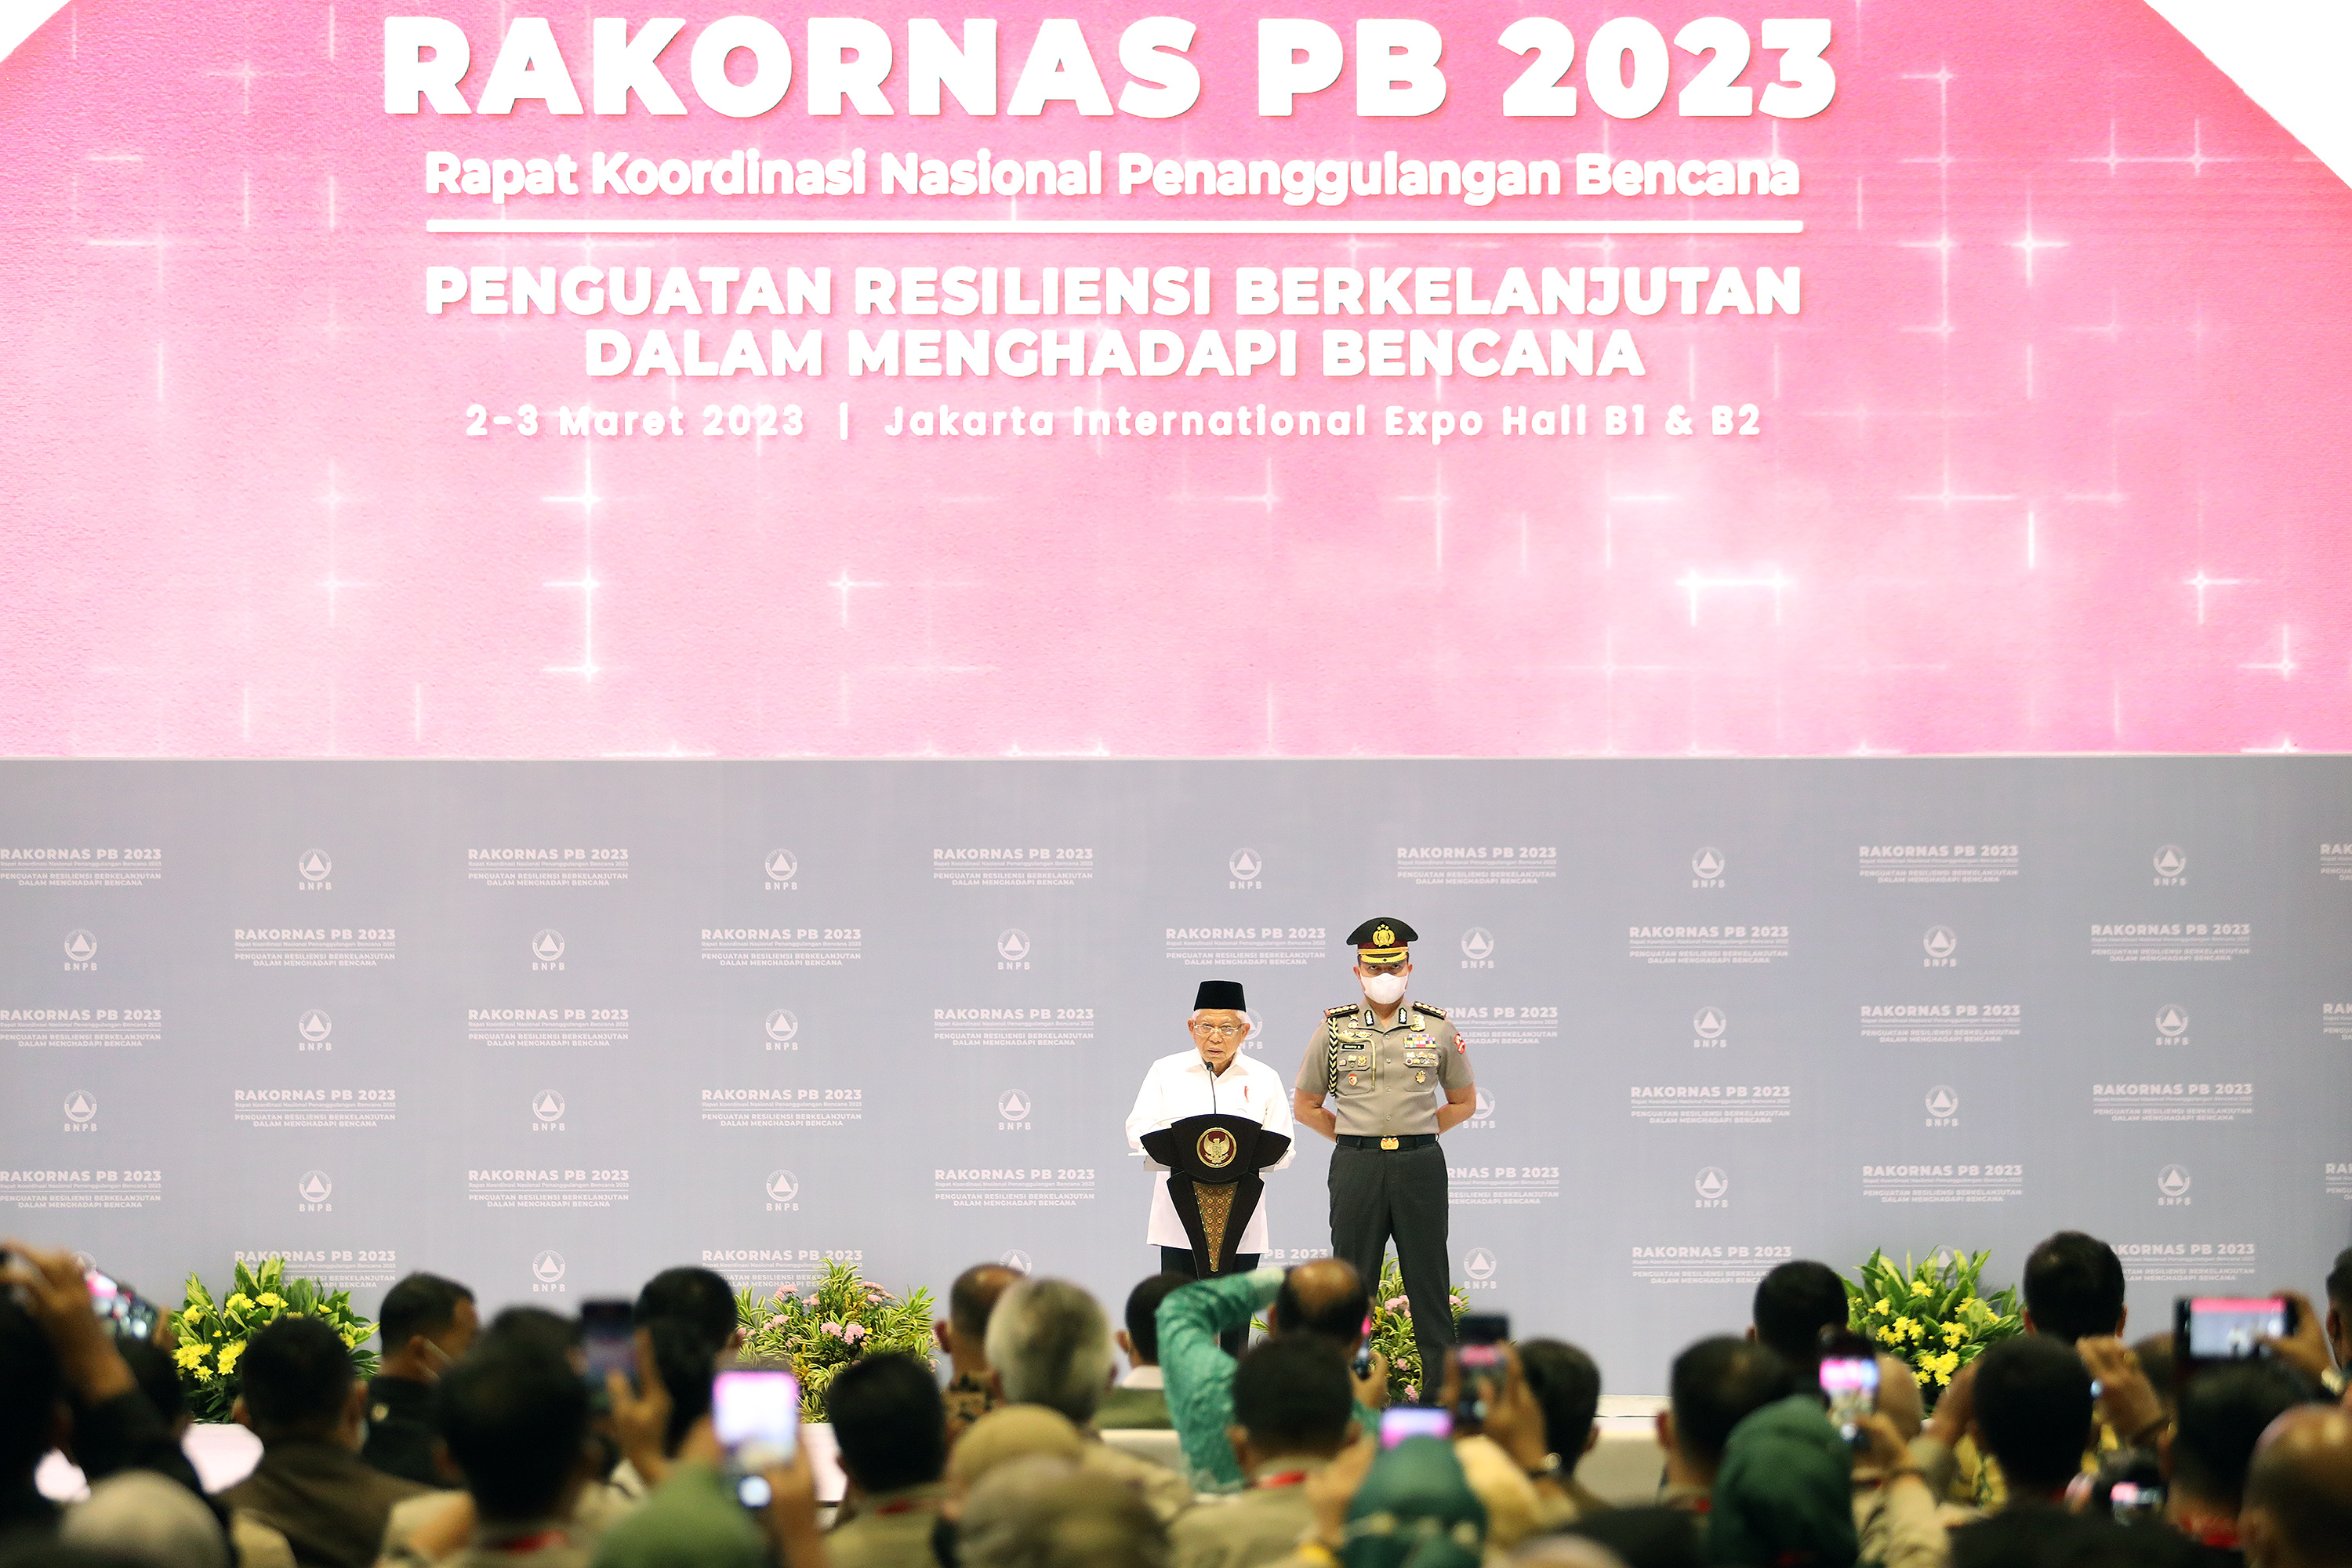 Wakil Presiden RI KH Ma'ruf Amin (kemeja putih) memberikan sambutan dalam Rapat Koordinasi Nasional (Rakornas) Penanggulangan Bencana (PB) Badan Nasional Penanggulangan Bencana (BNPB) tahun 2023 yang diselenggarakan di Jakarta International Expo (JiExpo) Kemayoran, Jakarta Pusat, Kamis (2/3). 